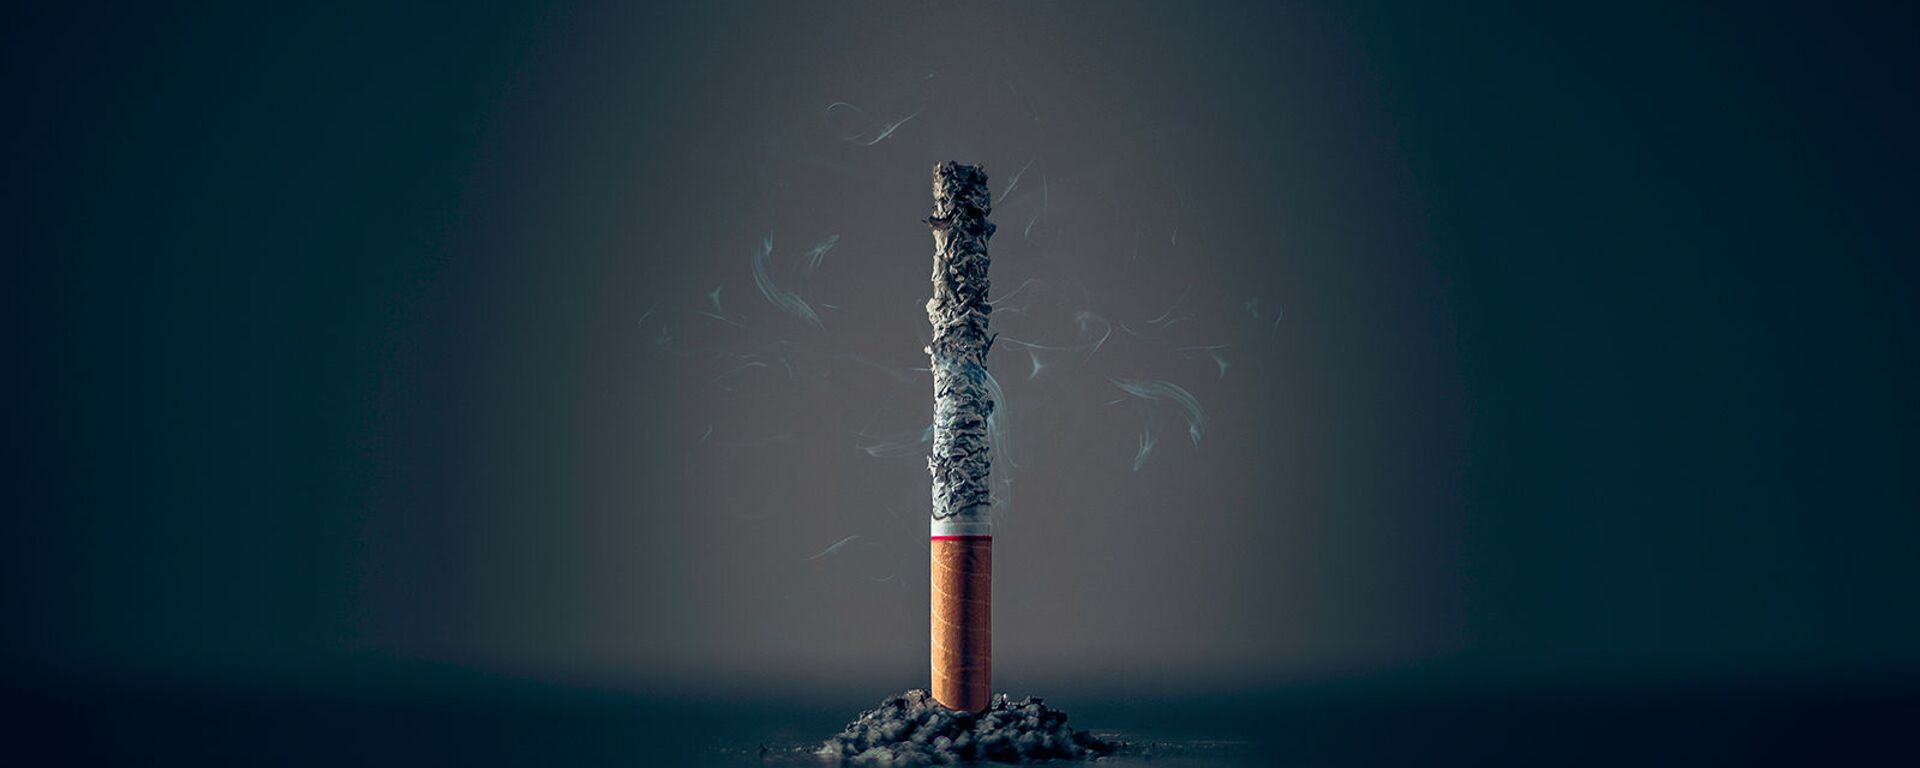 Пепел сигареты - Sputnik Армения, 1920, 20.12.2020